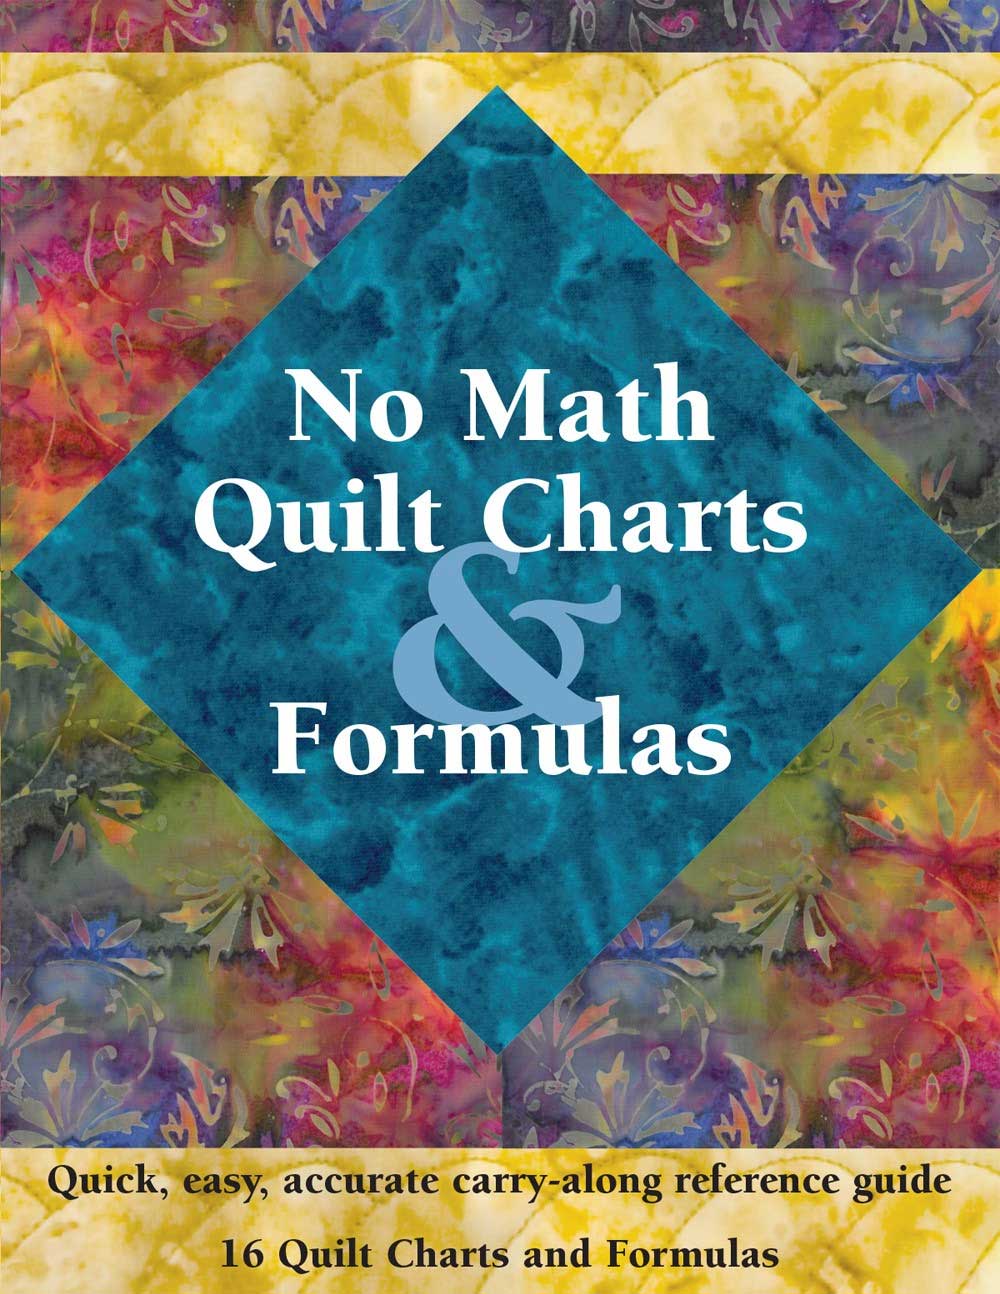 No Math Quilt Charts & Formulas - Quilting Book